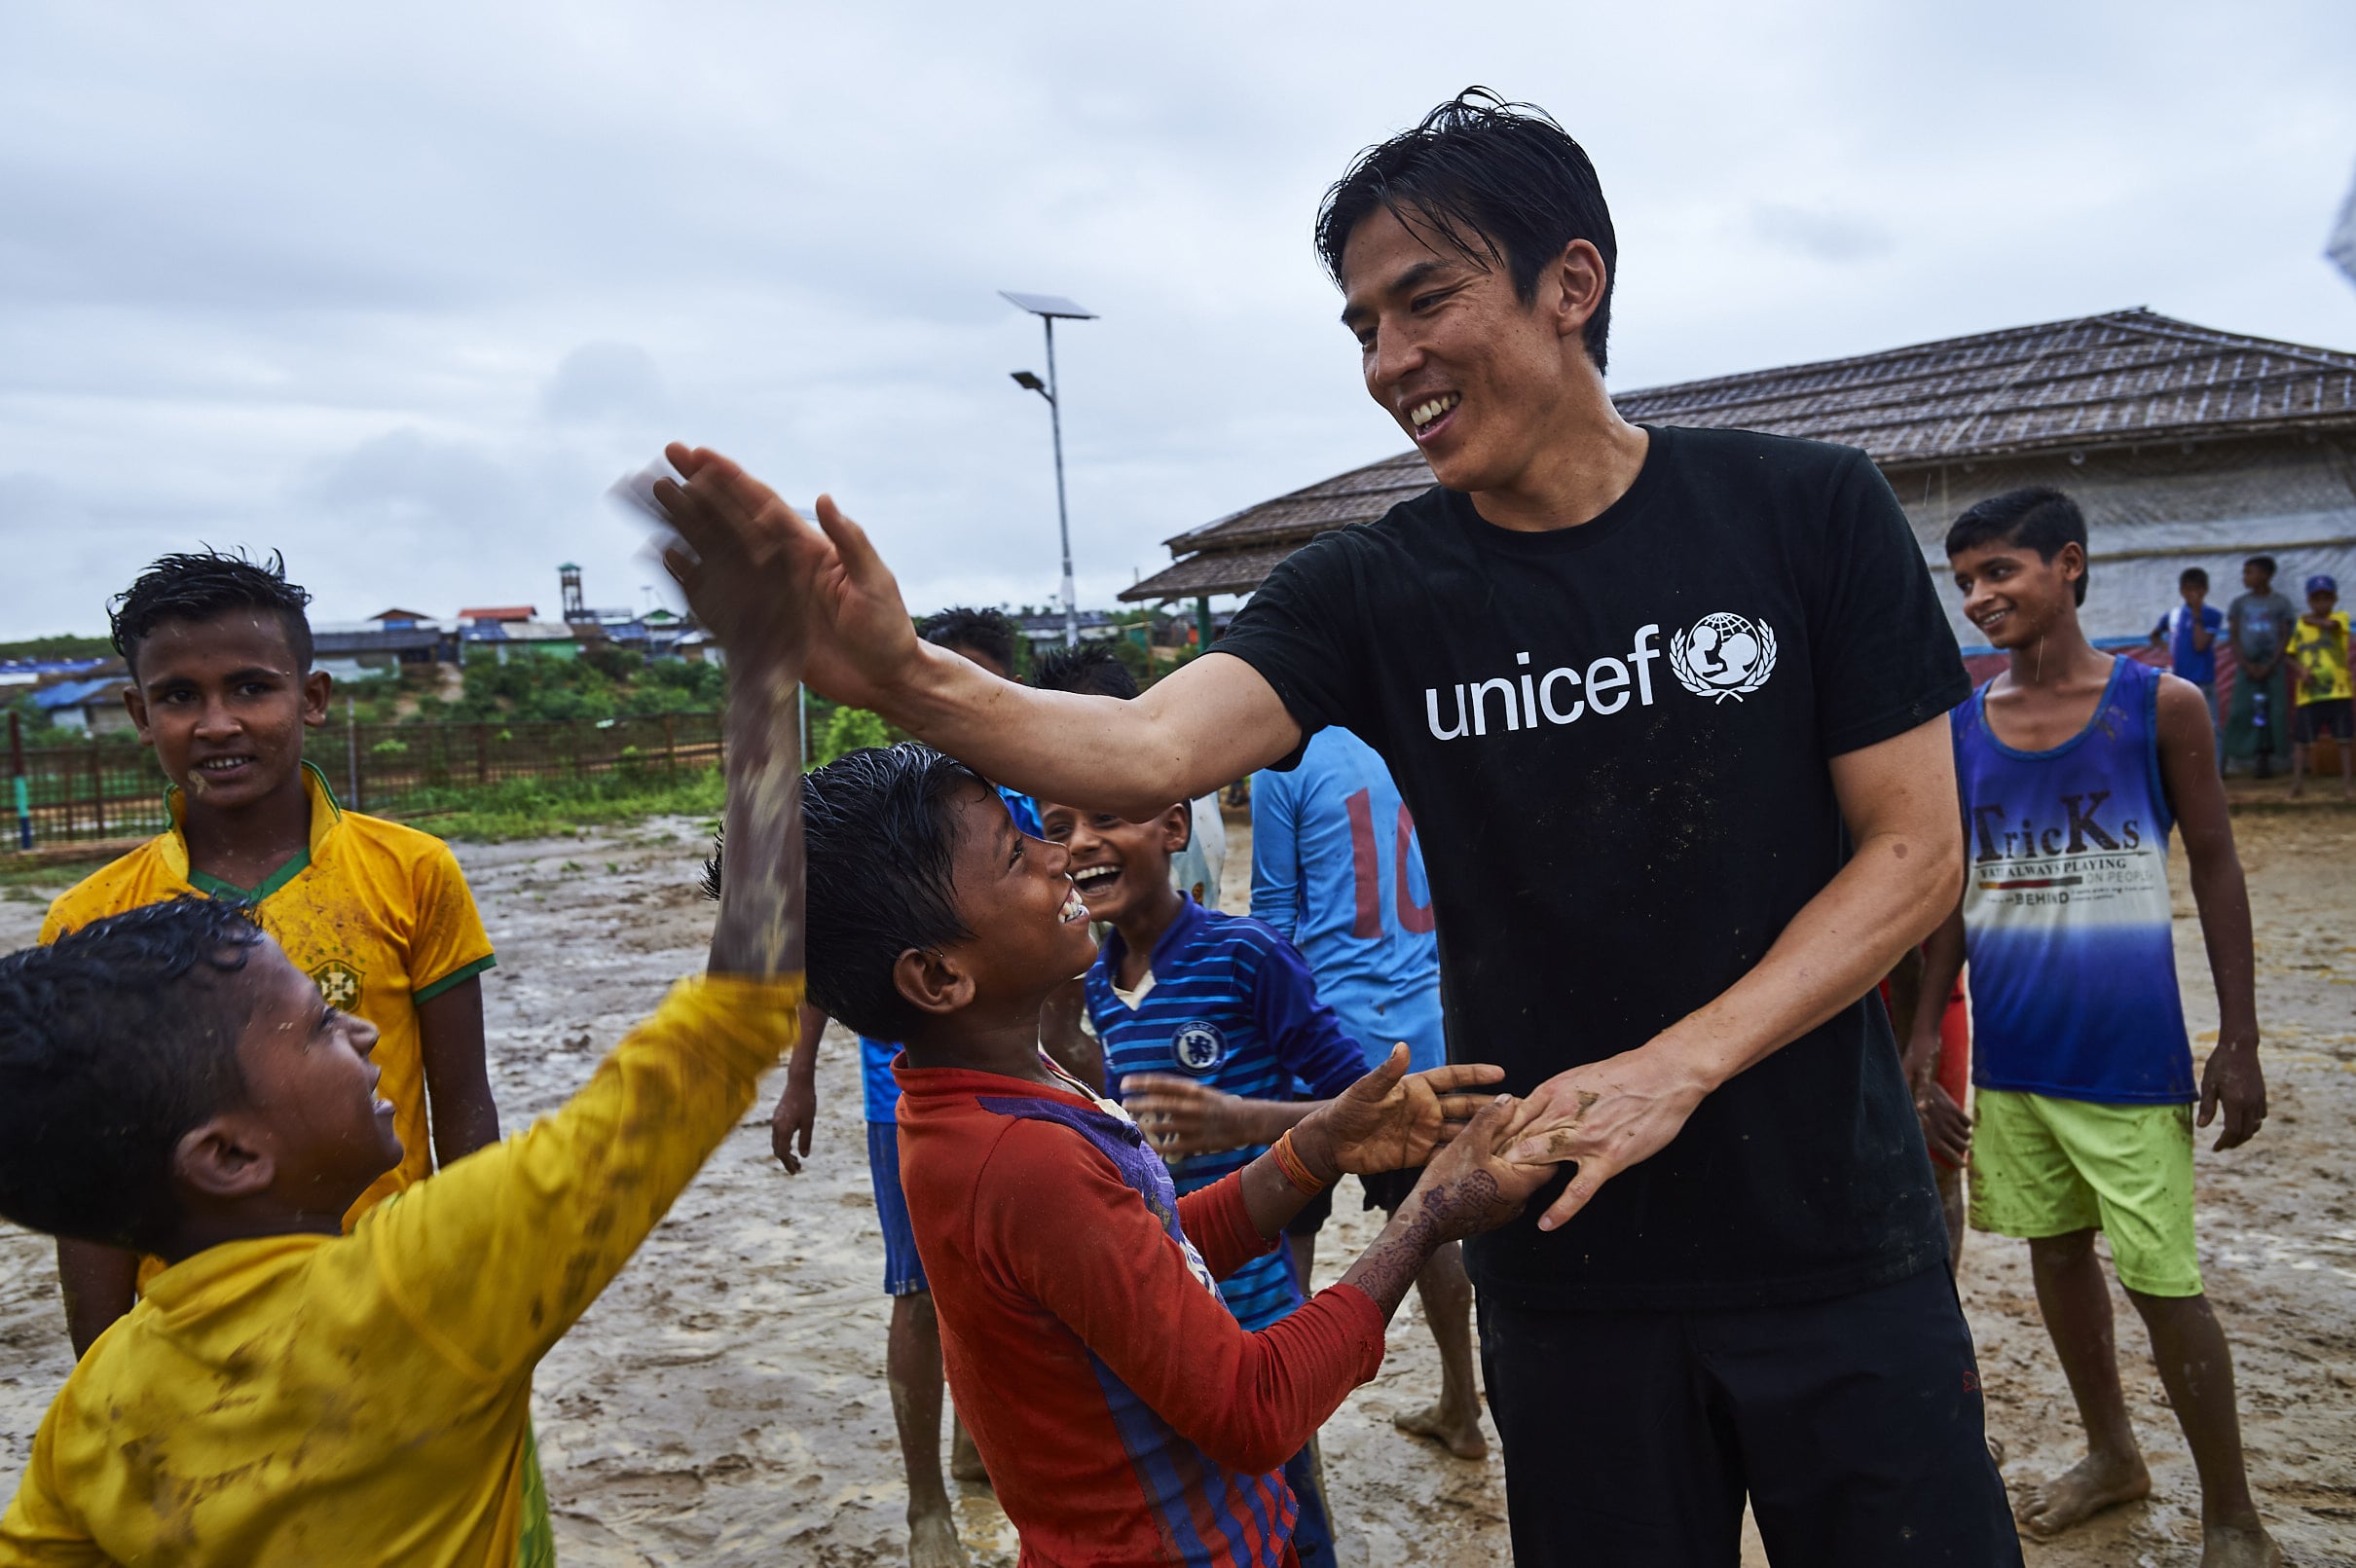 長谷部誠 日本ユニセフ協会大使 ロヒンギャ難民キャンプを訪問 2日目 子どもや若者とサッカーを通じて交流